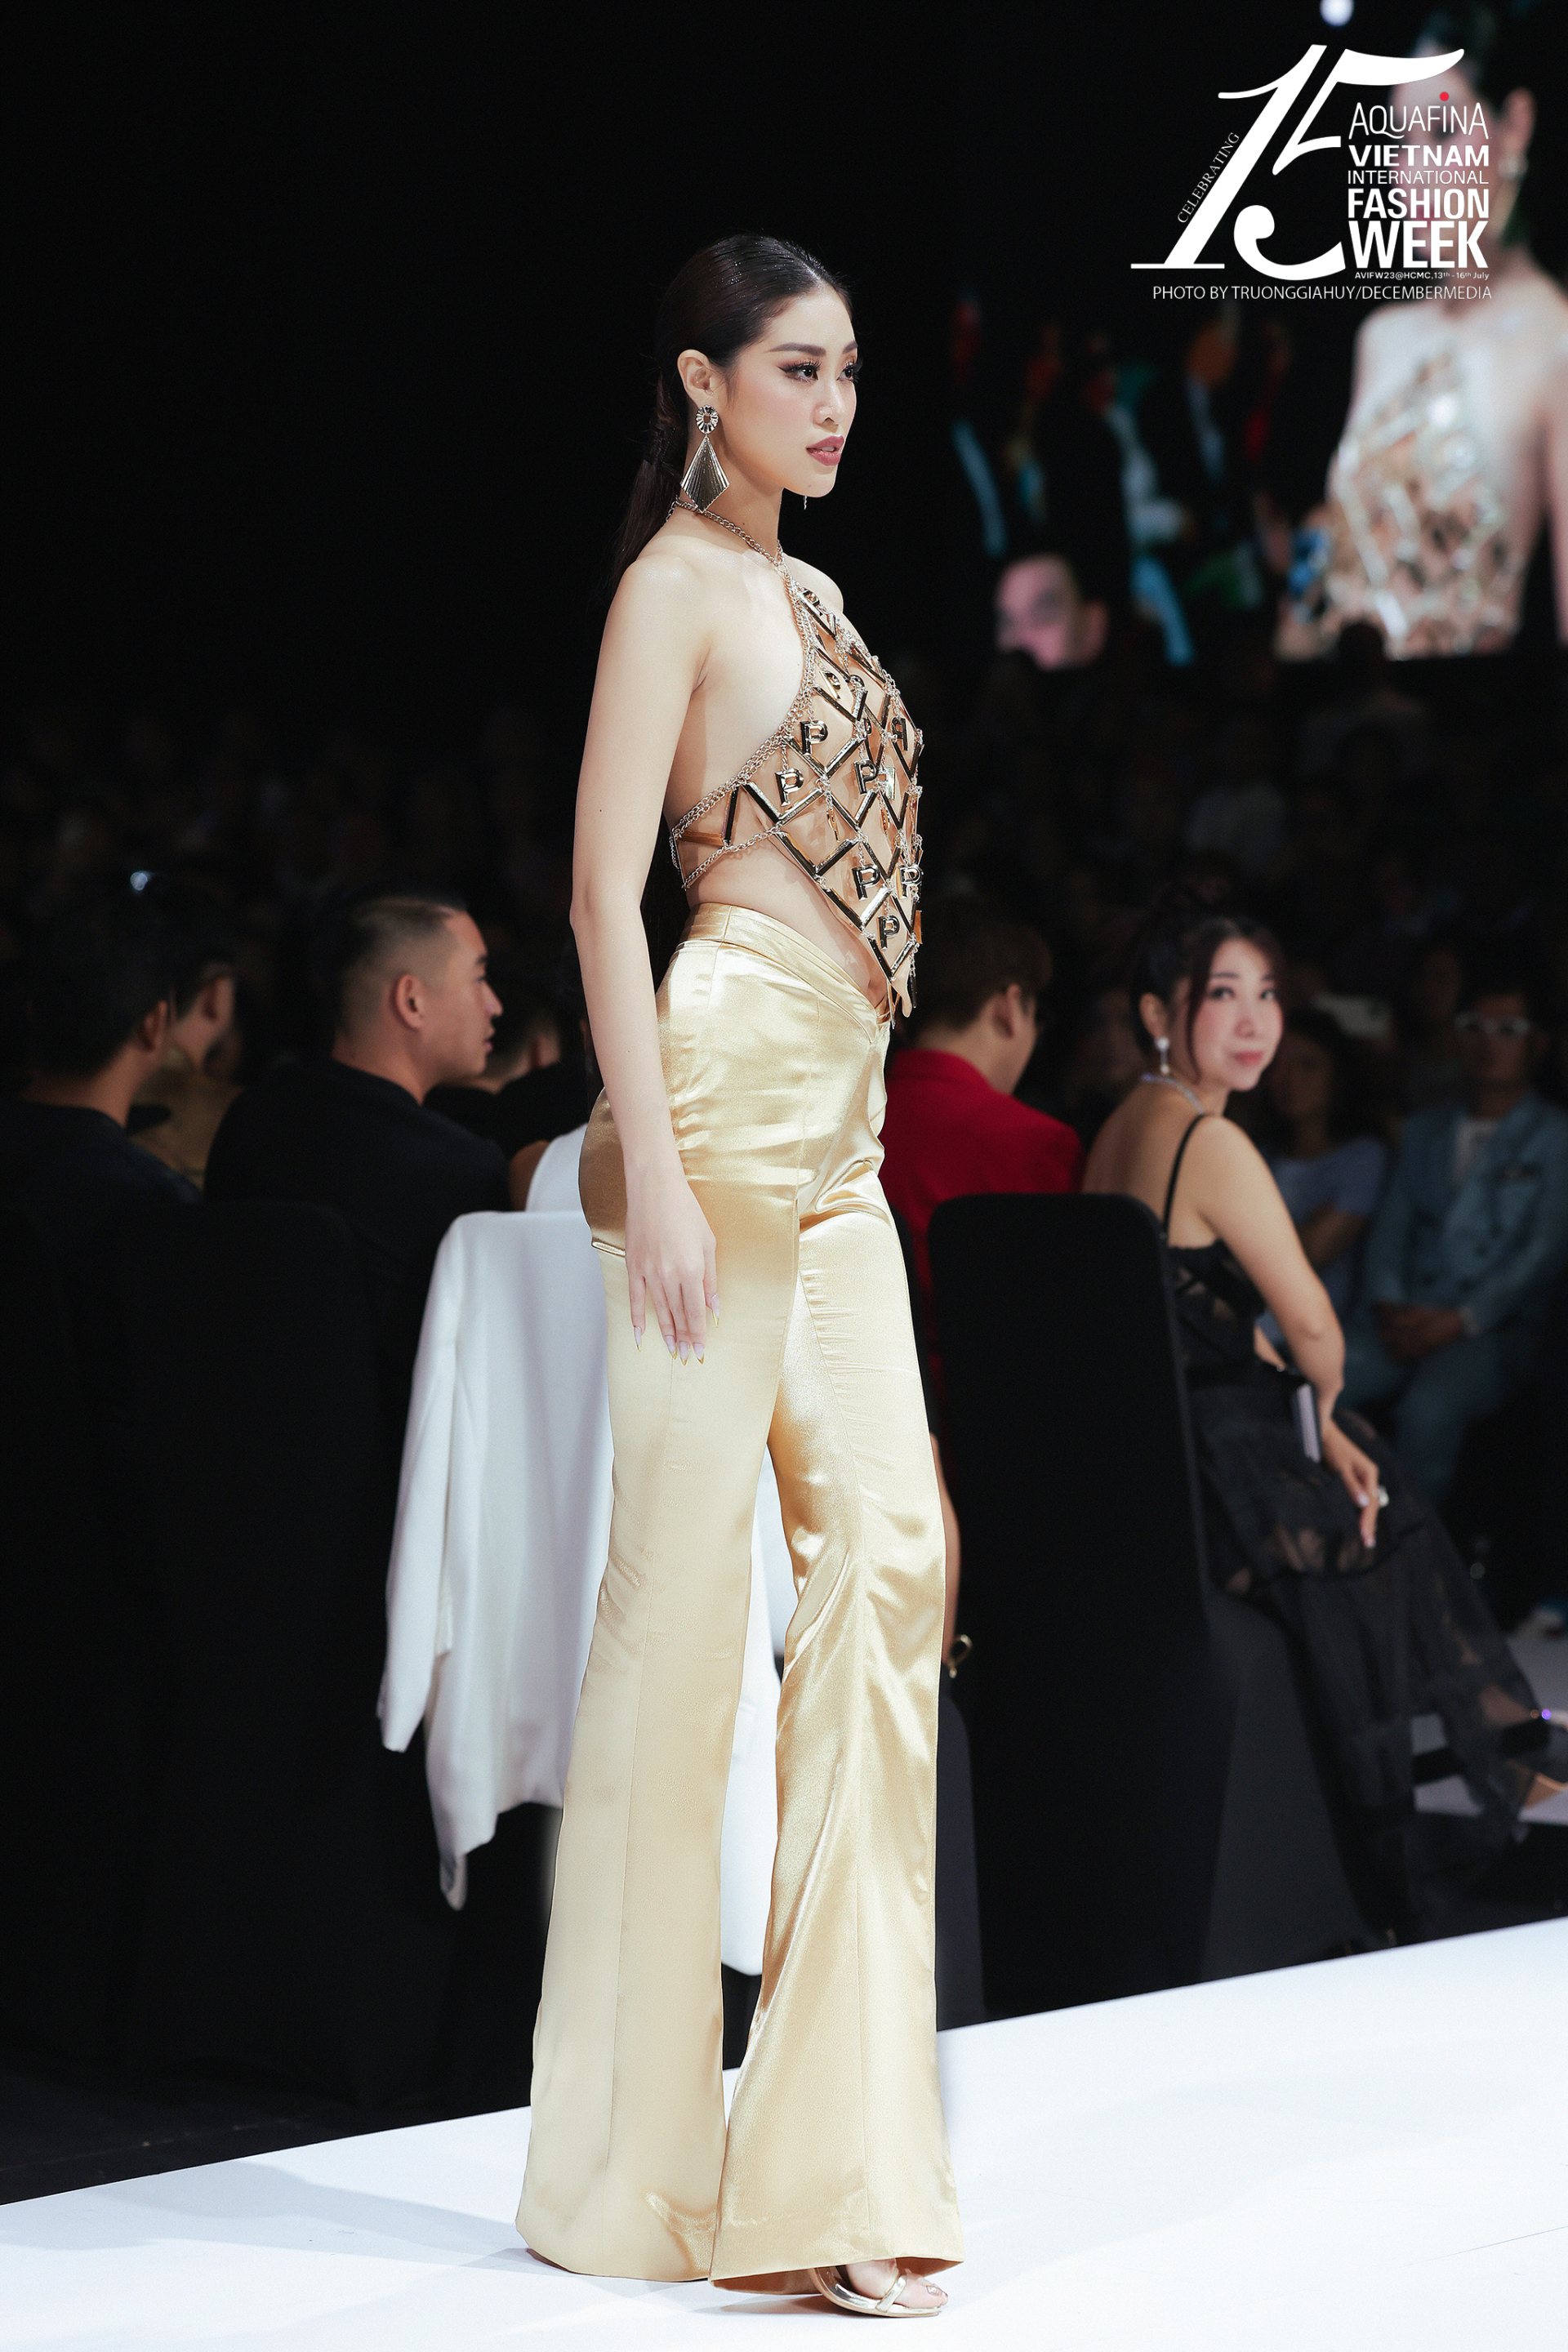 Hoa hậu Khánh Vân xuất hiện với vị trí first-face cho bộ sưu tập cùng trang phục áo yếm mang đậm nét truyền thống (Ảnh: Trương Gia Huy)